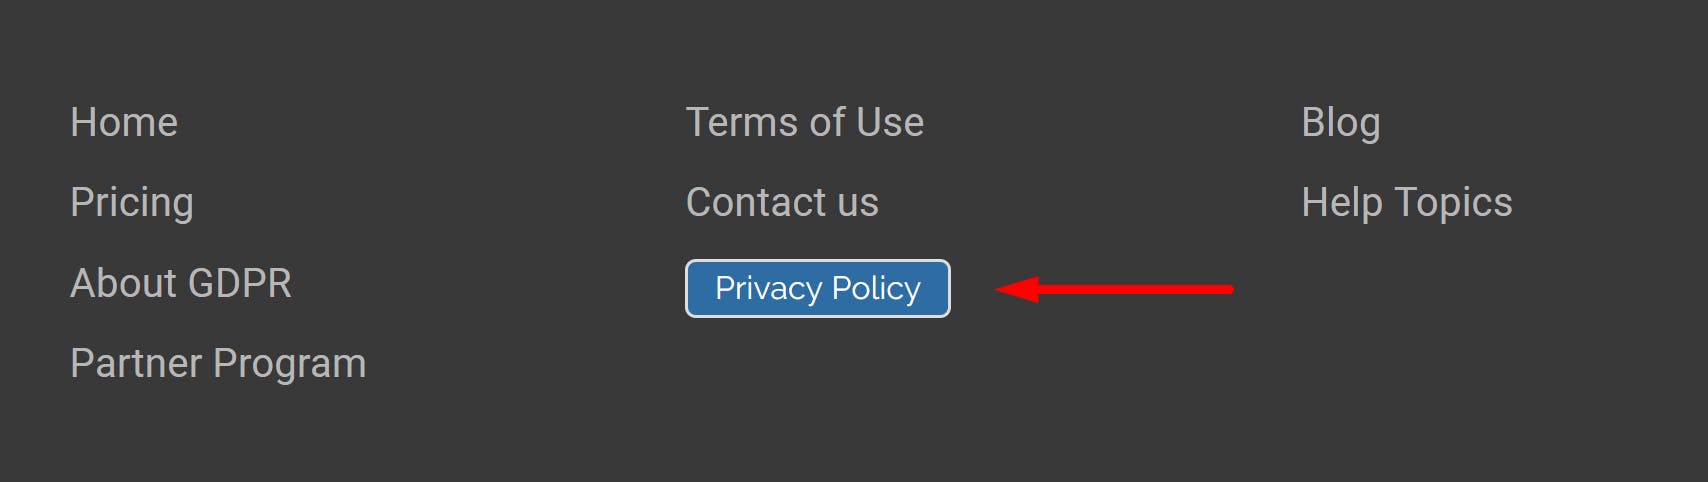 Política de privacidade